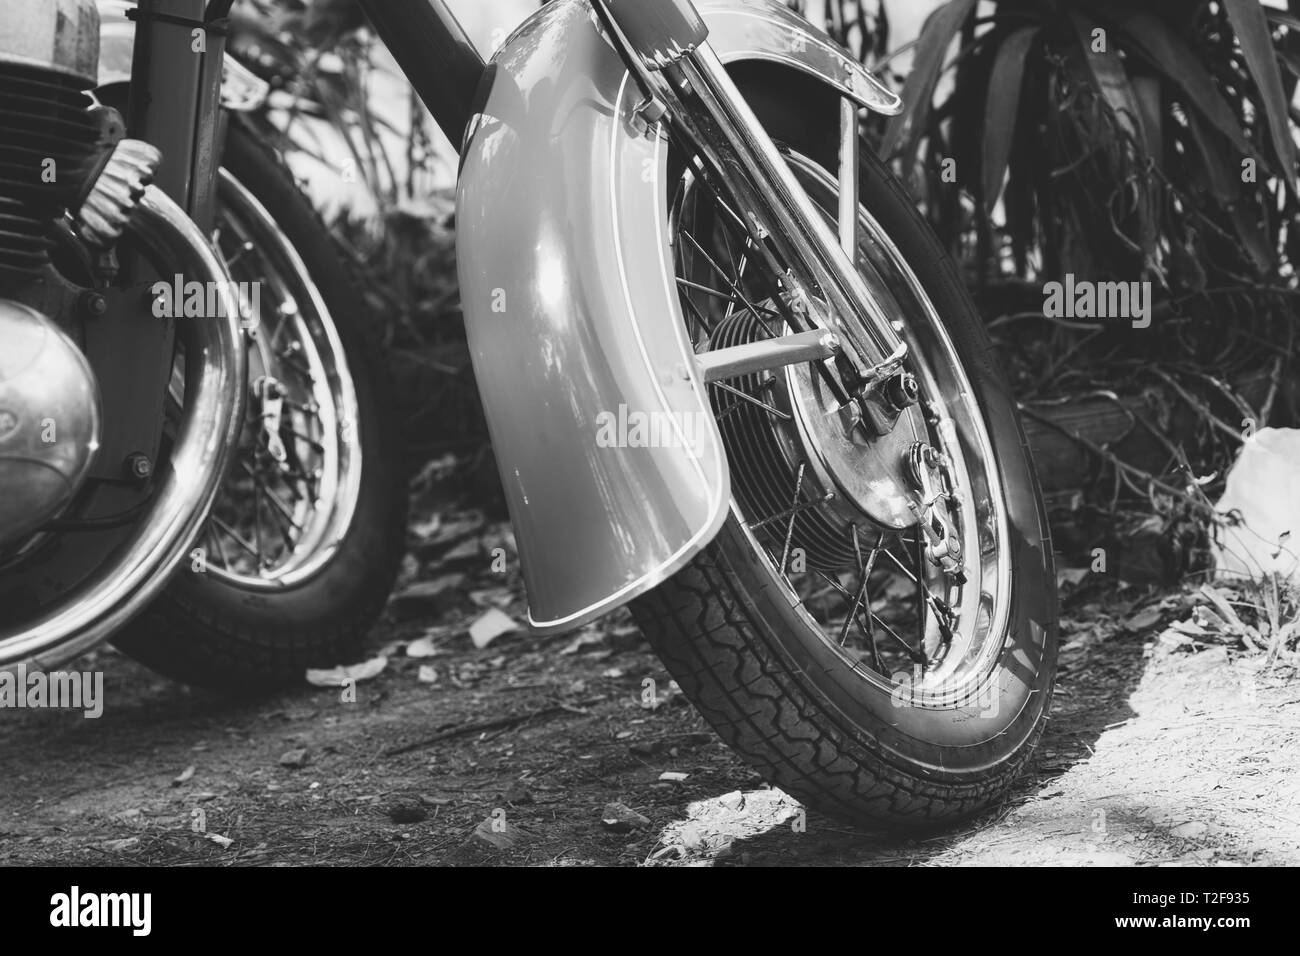 Motorrad teil Schwarzweiß-Stockfotos und -bilder - Seite 3 - Alamy